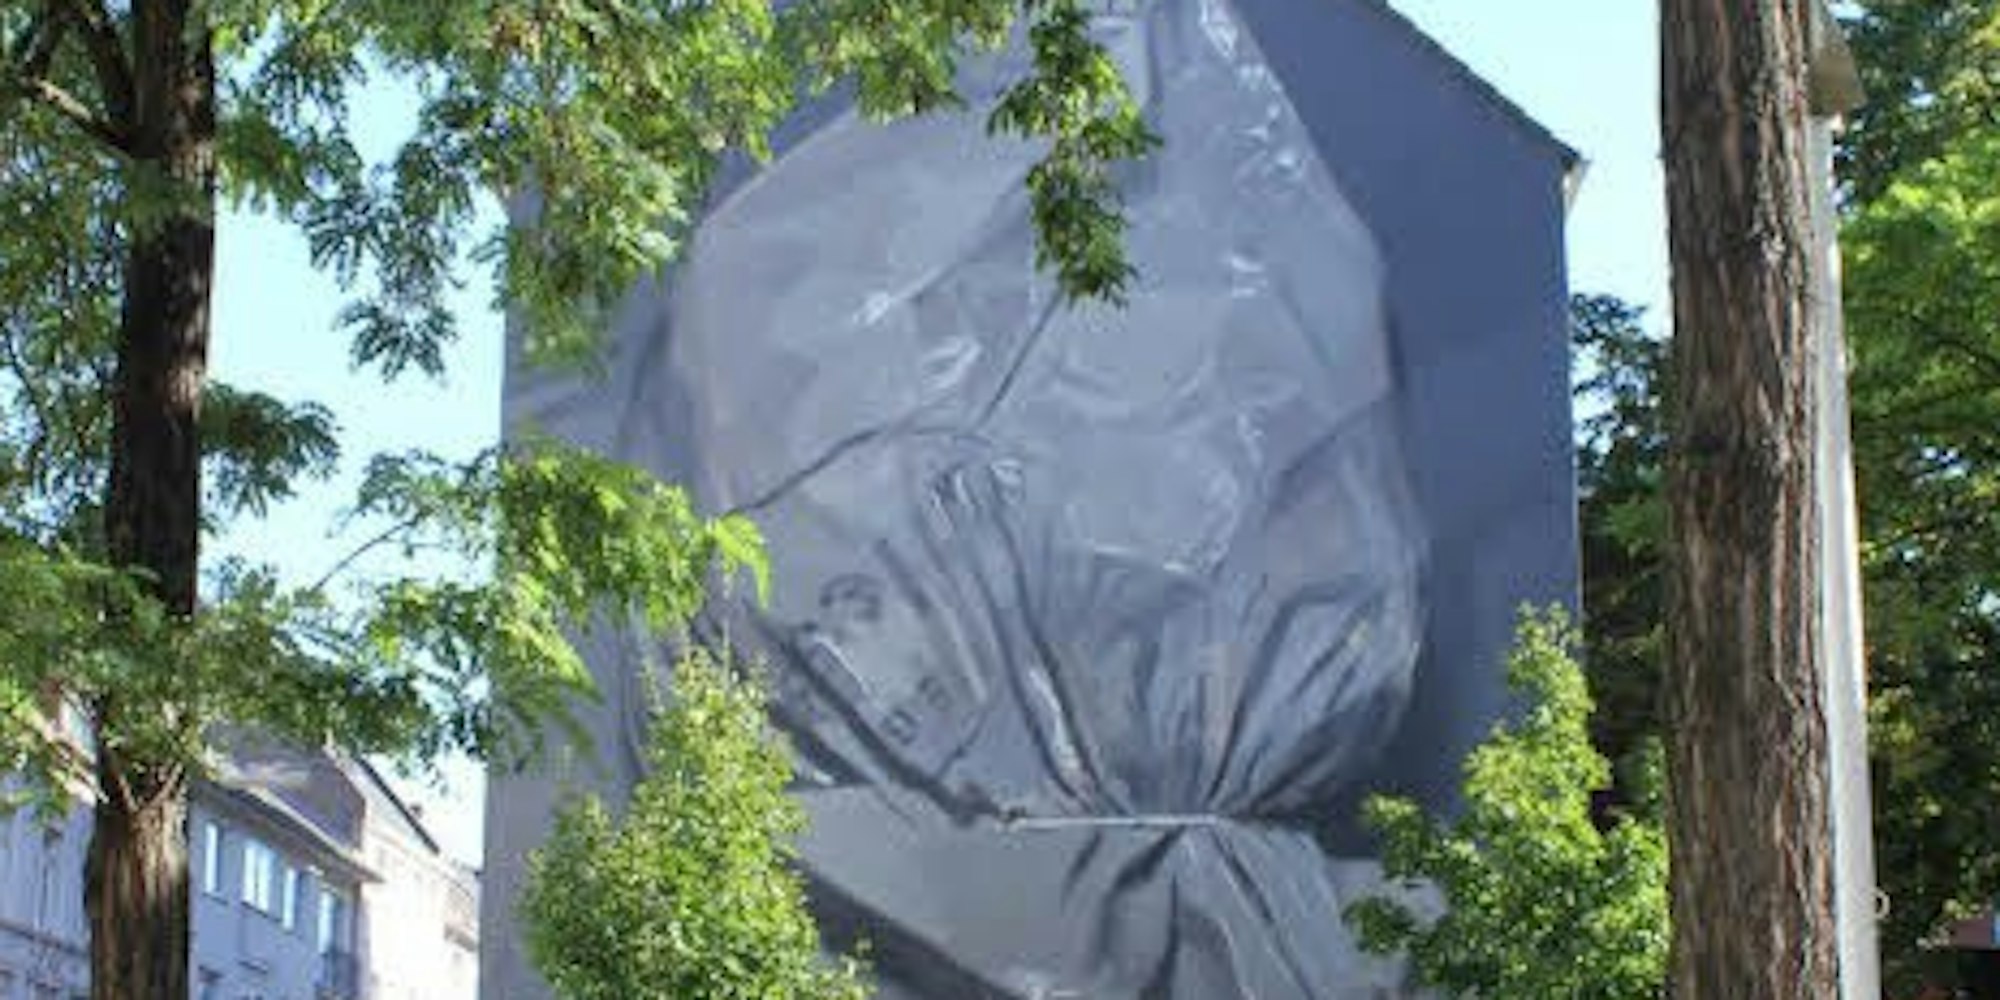 Gegenüber dem Norbert-Burger-Seniorenzentrum zeigt das Wandbild einen männlichen Kopf mit übergestülpter Plastiktüte.